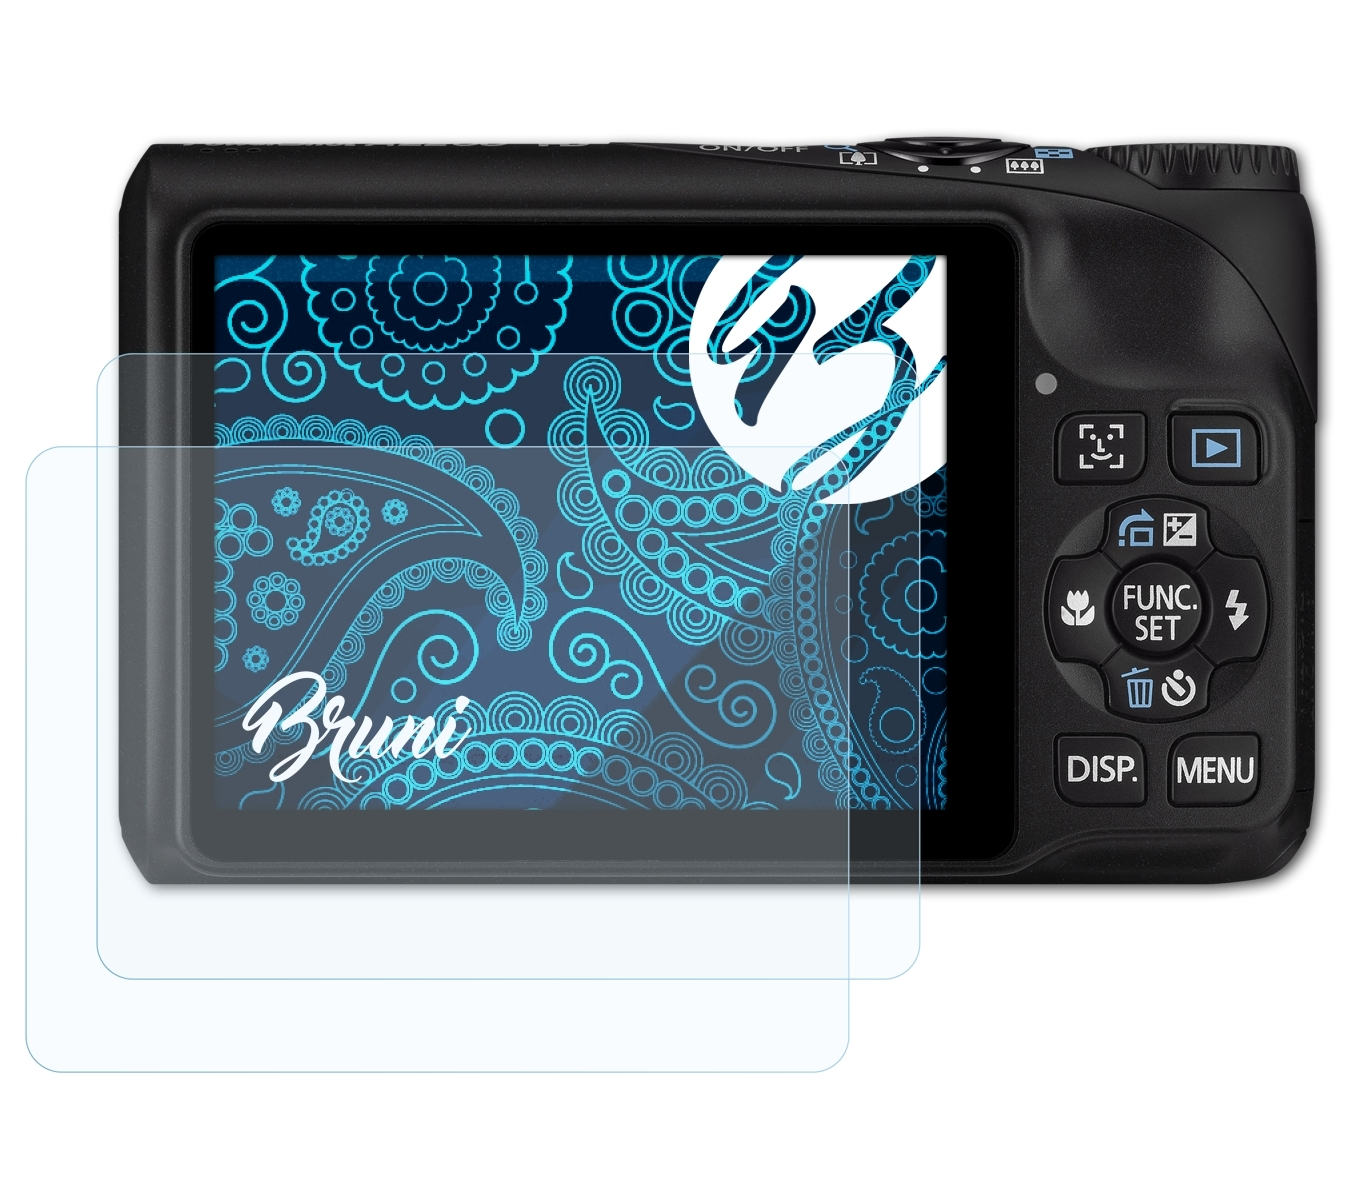 BRUNI 2x Basics-Clear Canon PowerShot Schutzfolie(für A2200)